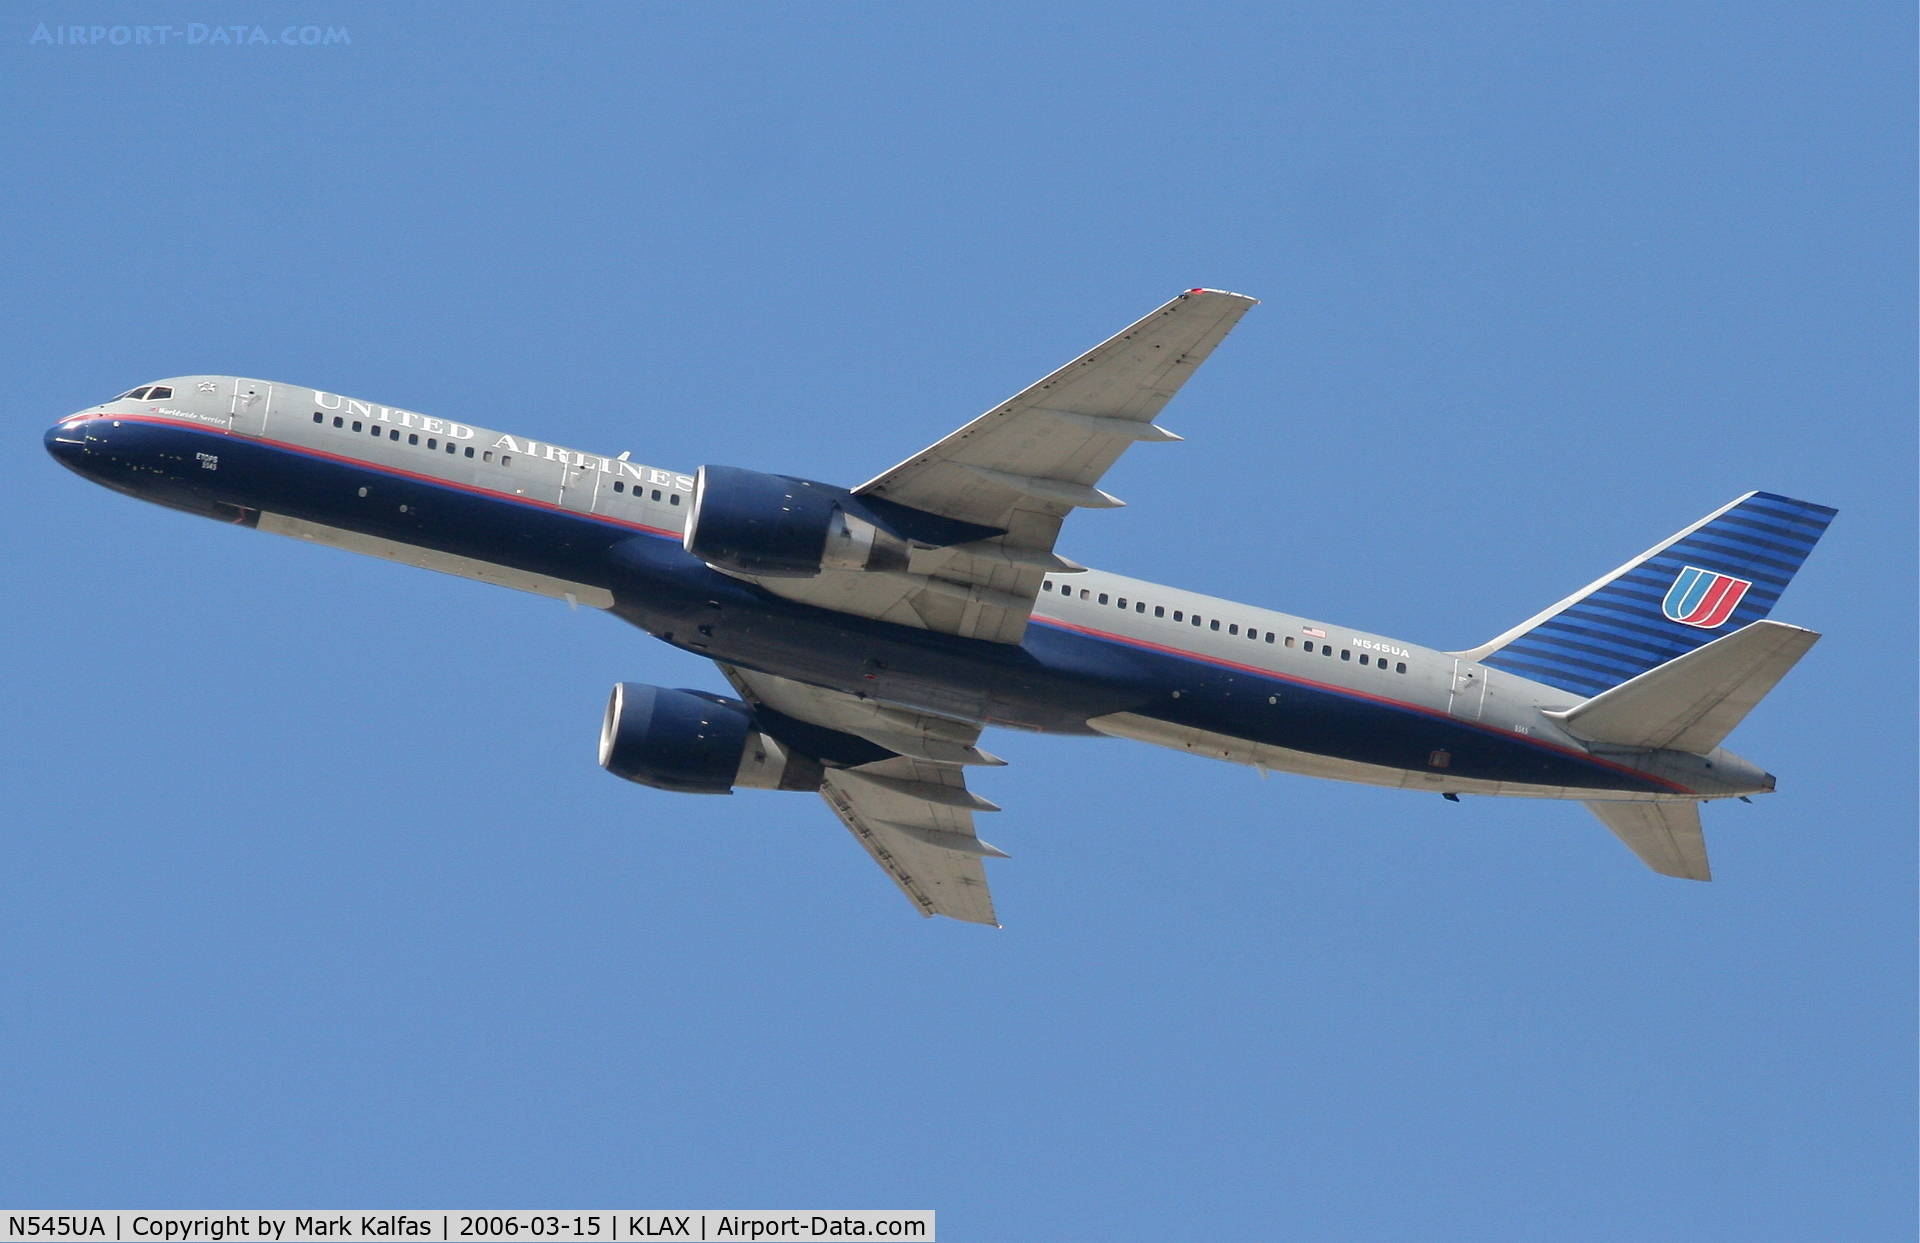 N545UA, 1991 Boeing 757-222 C/N 25323, United Airlines Boeing 757-222, N545UA departing KLAX 25R.